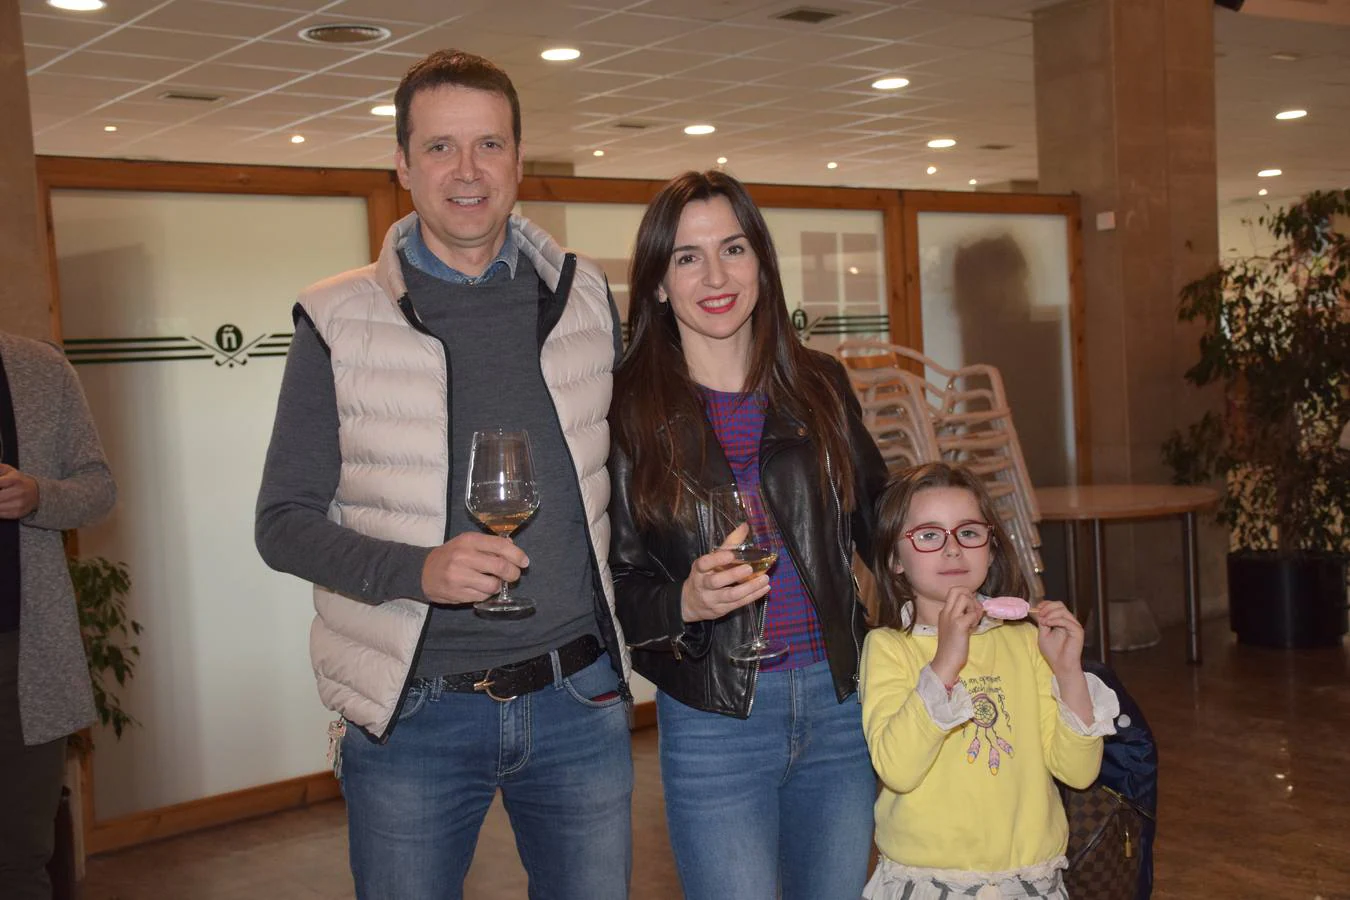 Los asistentes disfrutaron tras la jornada de juego de la cata de dos vinos de Bodegas Perica.